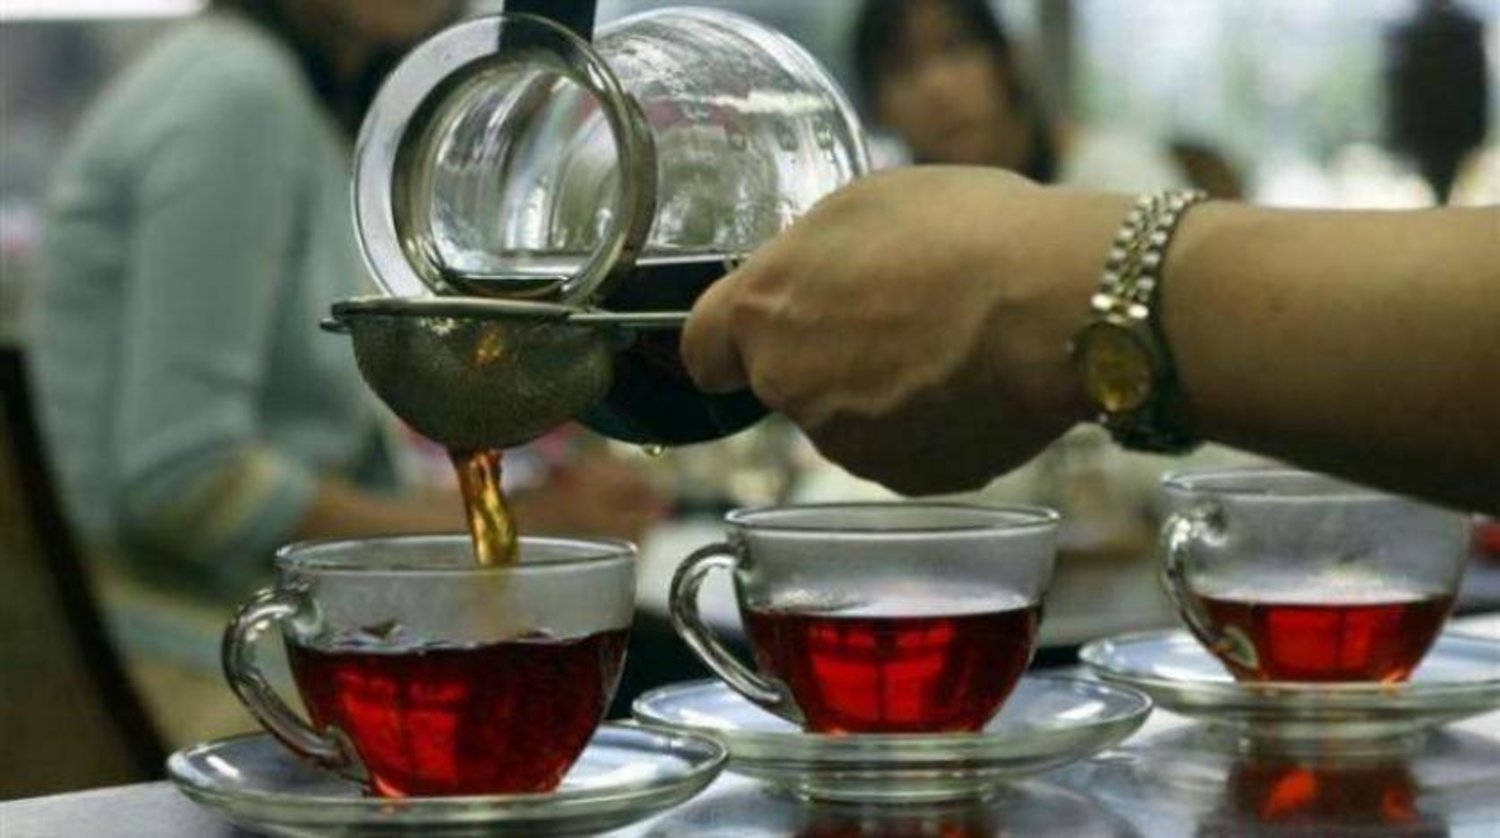 شرب الشاي يومياً يساعد على التحكم في مستويات السكر بالدم (رويترز)